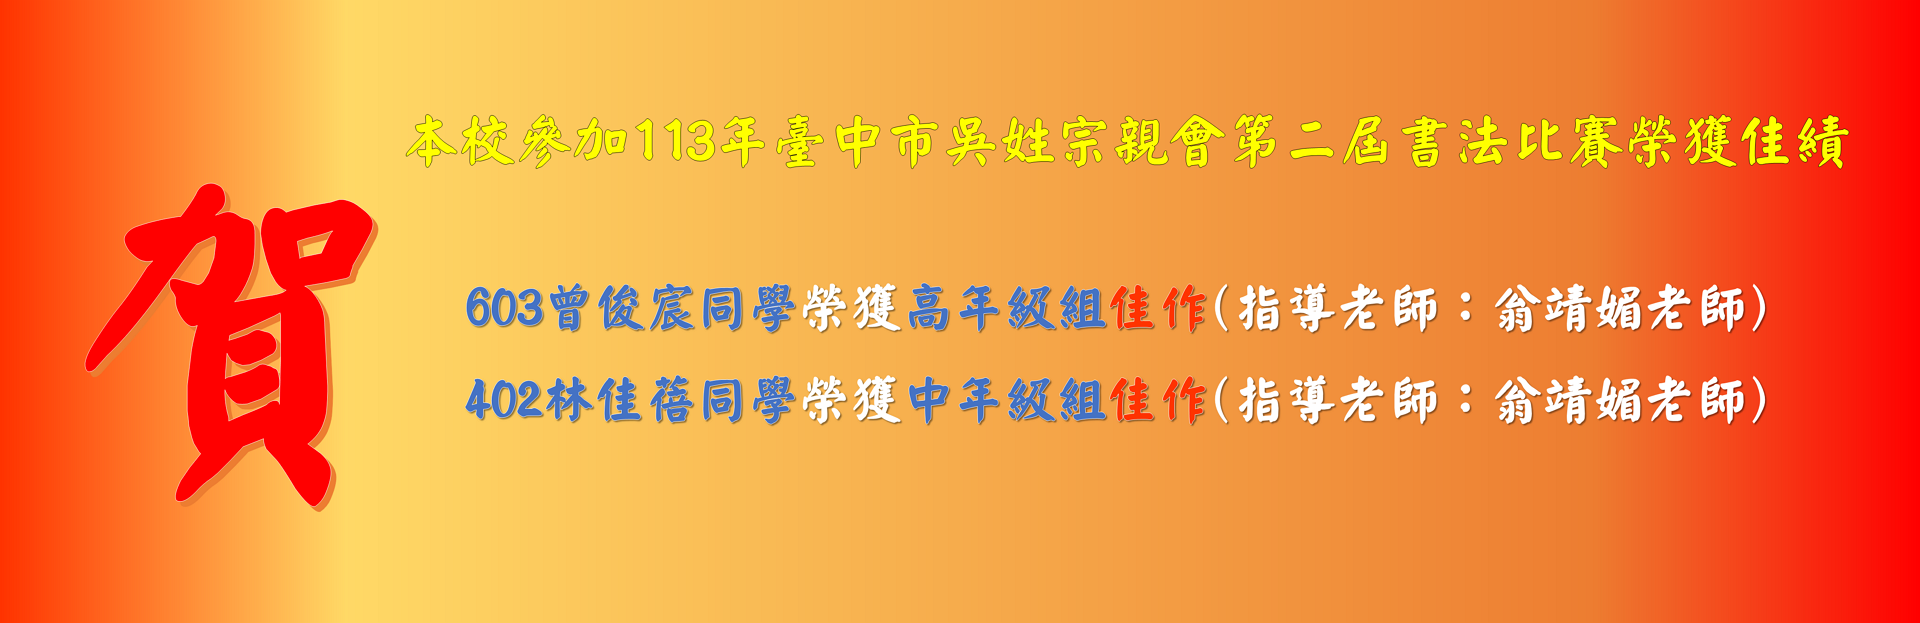 本校參加113年臺中市吳姓宗親會第二屆書法比賽榮獲佳績